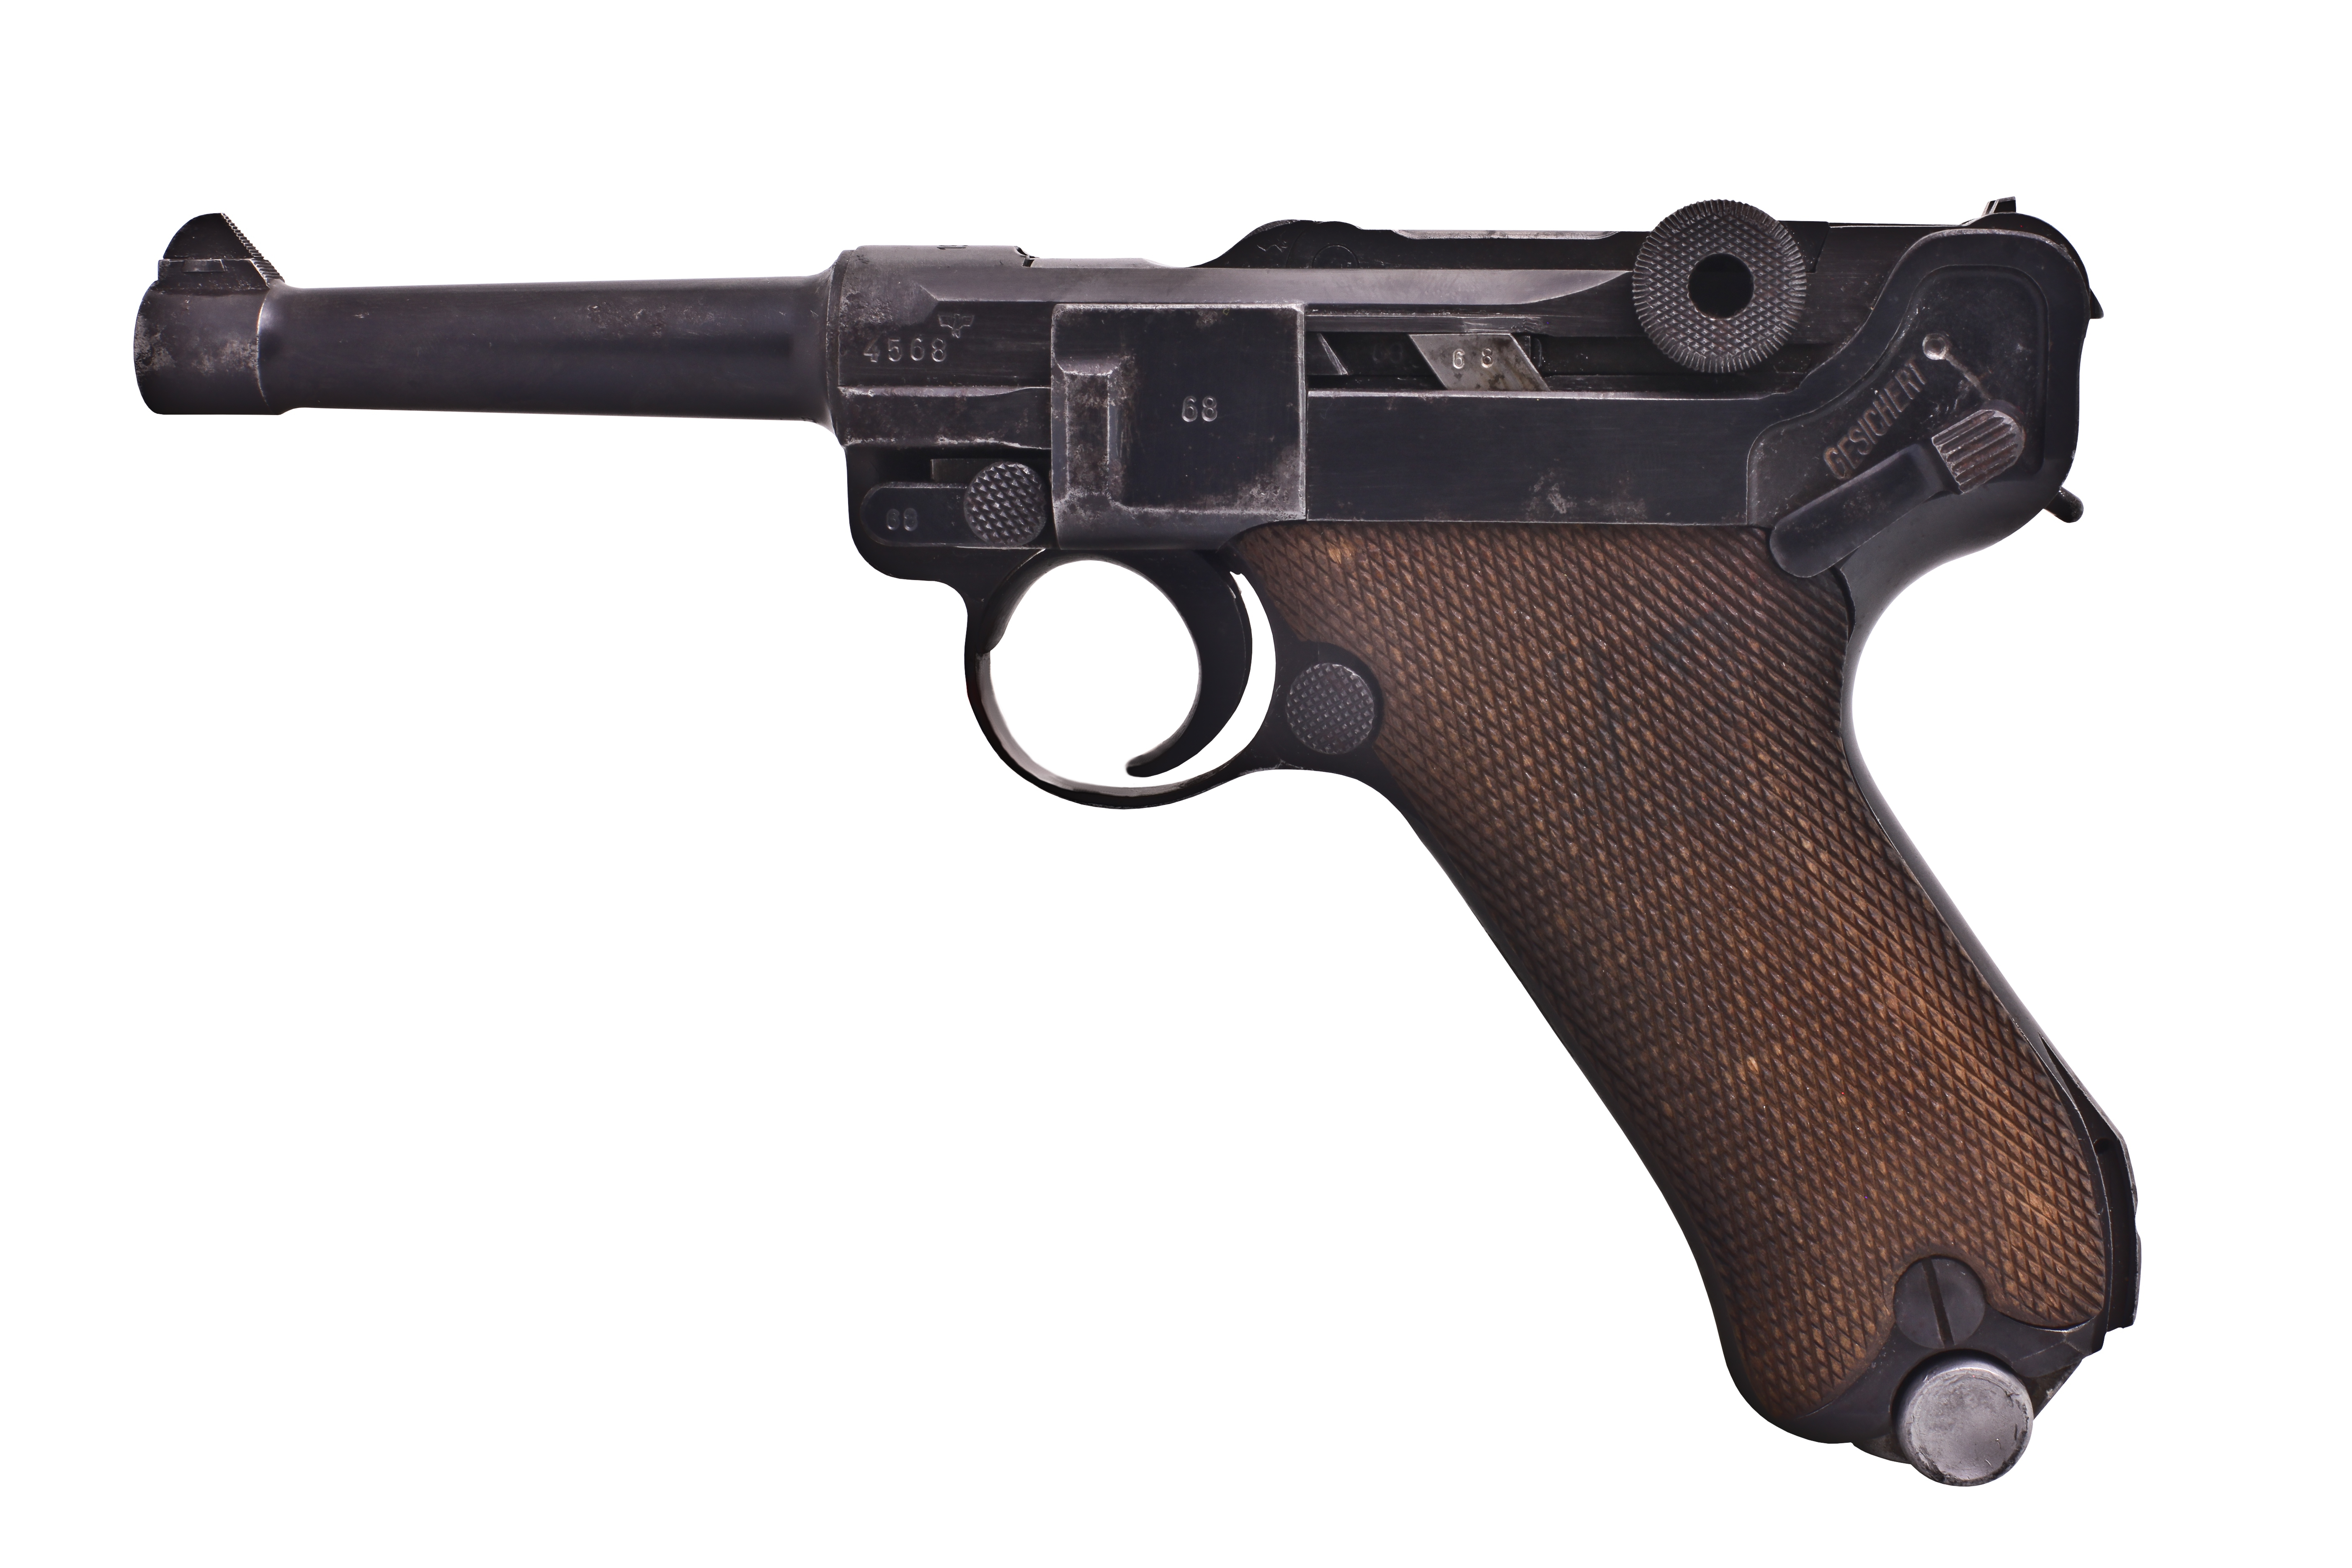 PARA USA (PARA-ORDNANCE) Model P18.9 :: Gun Values by Gun Digest